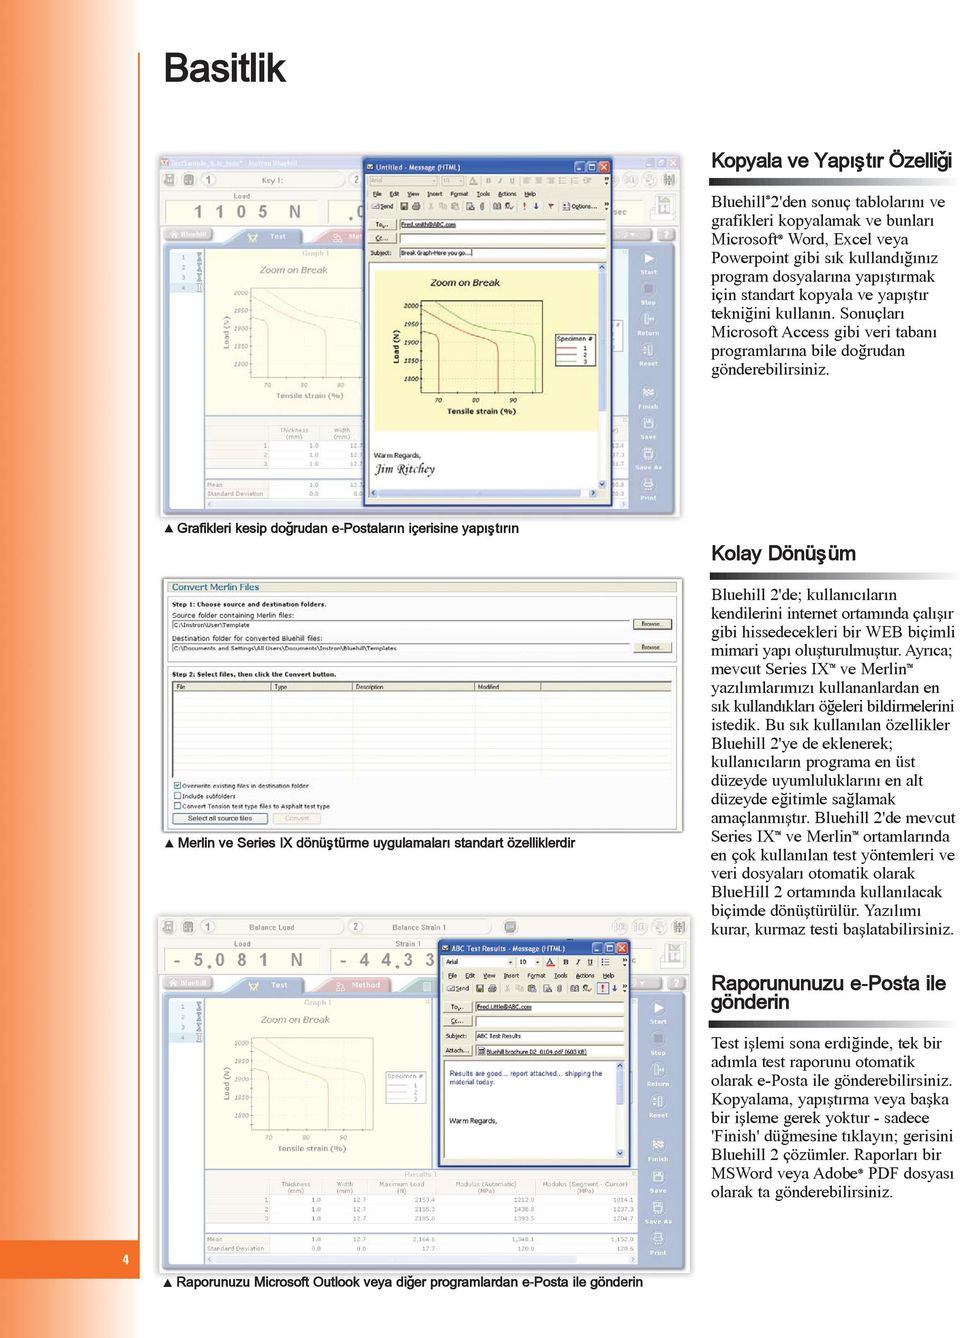 d Grafikleri kesip doðrudan e-postalarýn içerisine yapýþtýrýn d Merlin ve Series IX dönüþtürme uygulamalarý standart özelliklerdir Kolay Dönüþüm Bluehill 2'de; kullanýcýlarýn kendilerini internet